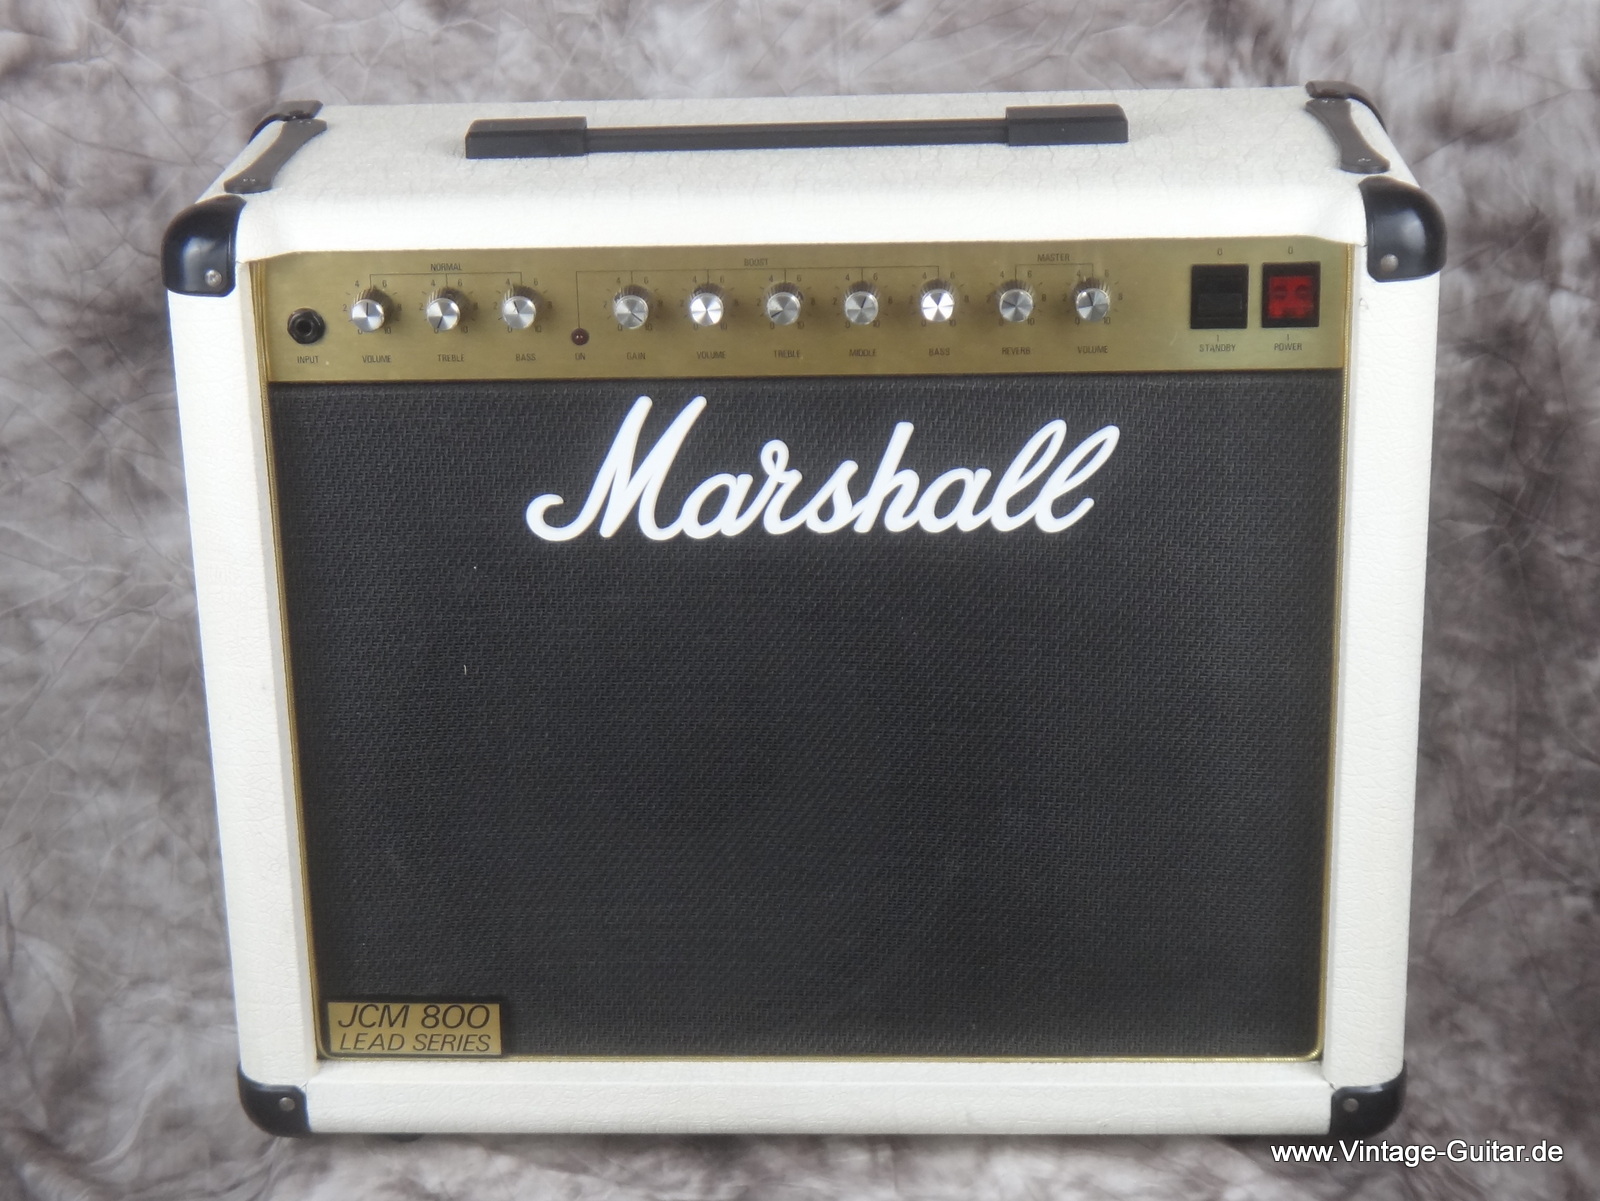 Marshall-Combo-JV-800-white-4210-001.JPG